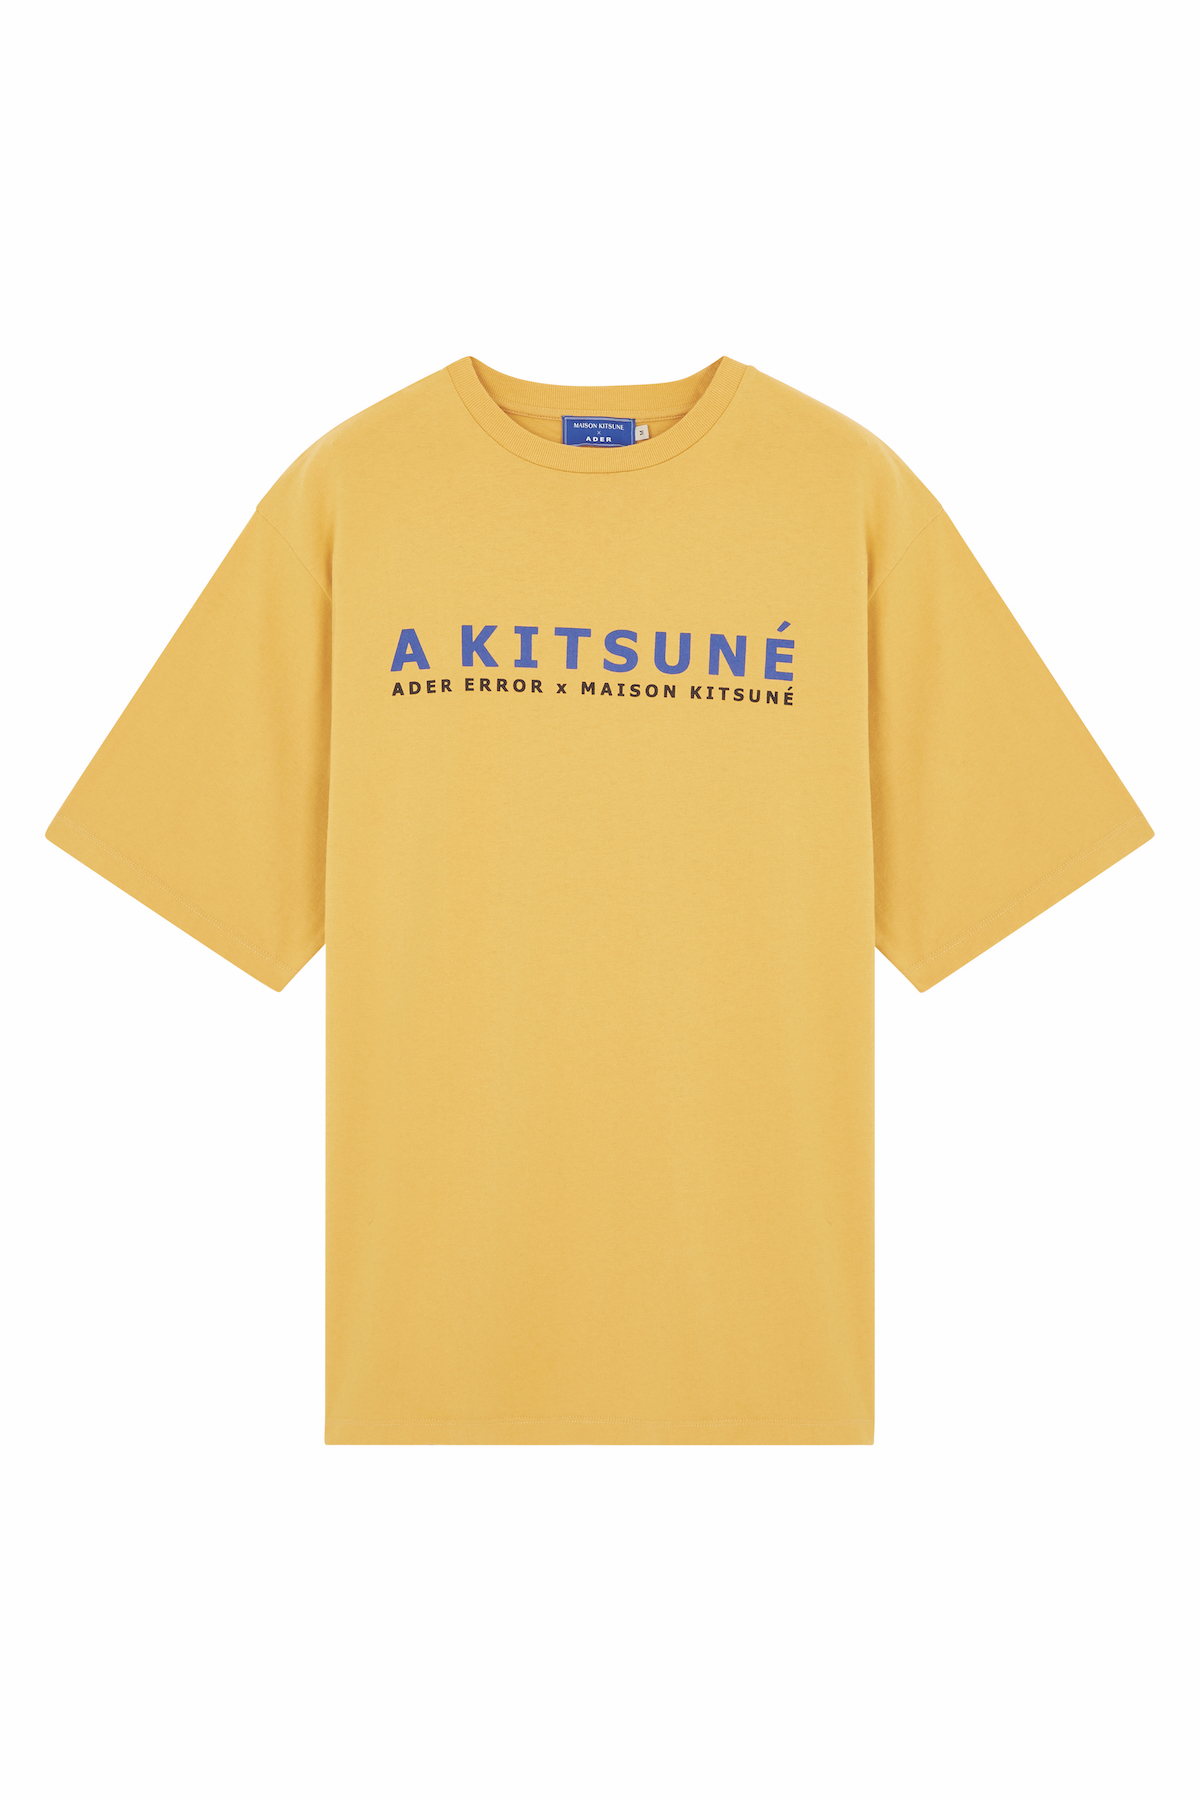 ader error × MAISON KITSUNE Tシャツ オレンジ